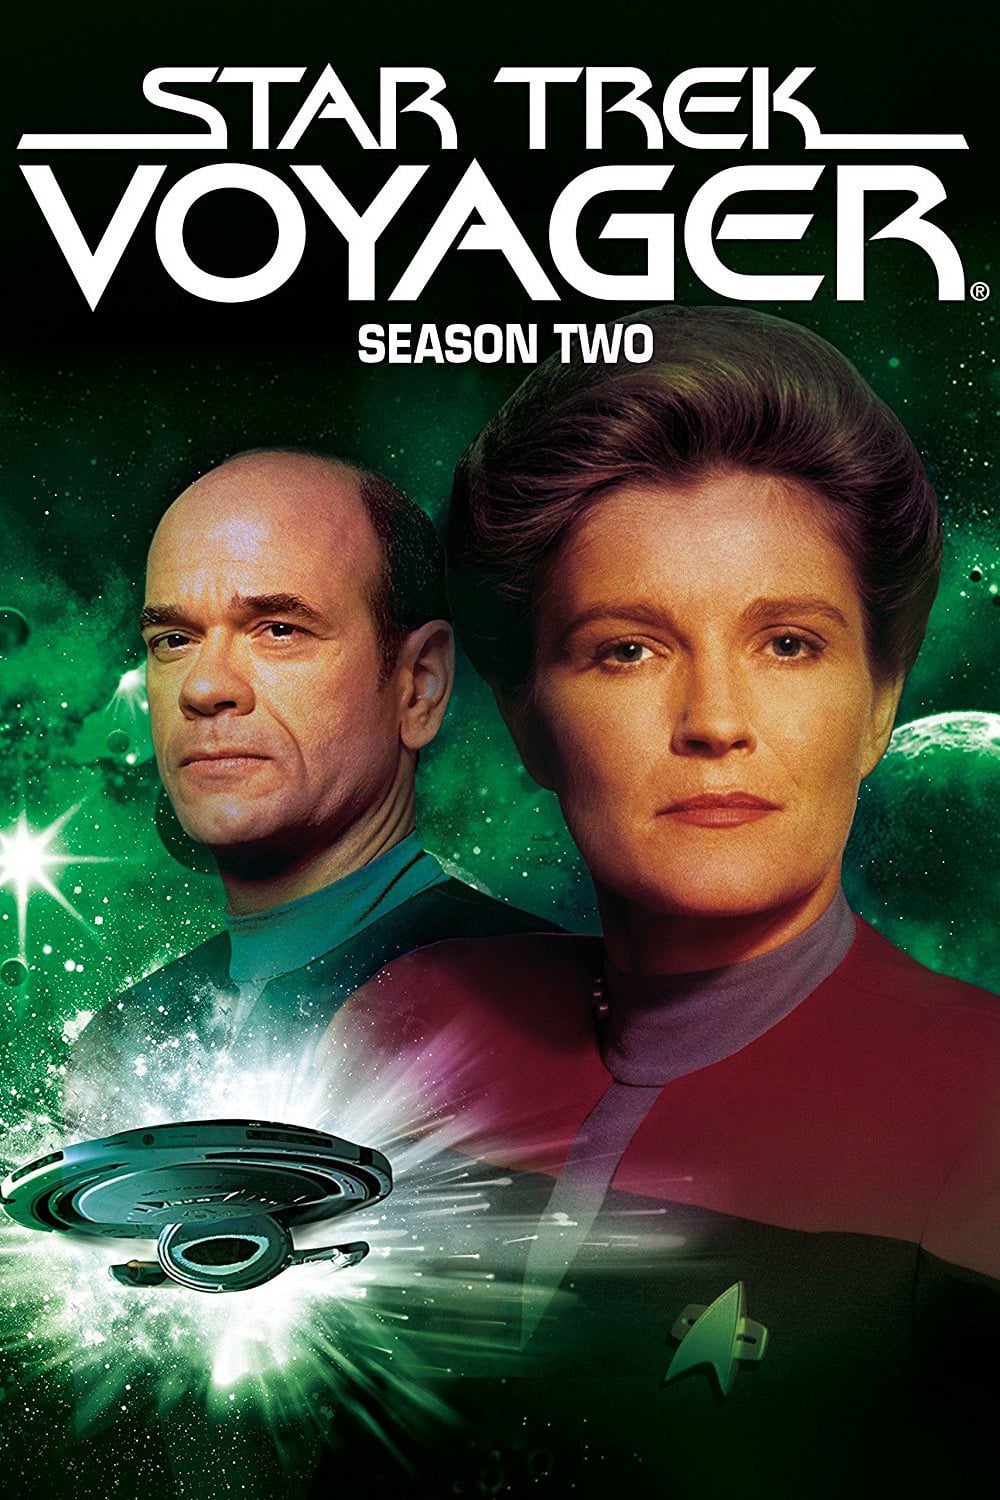 voyager season 2 episode 3